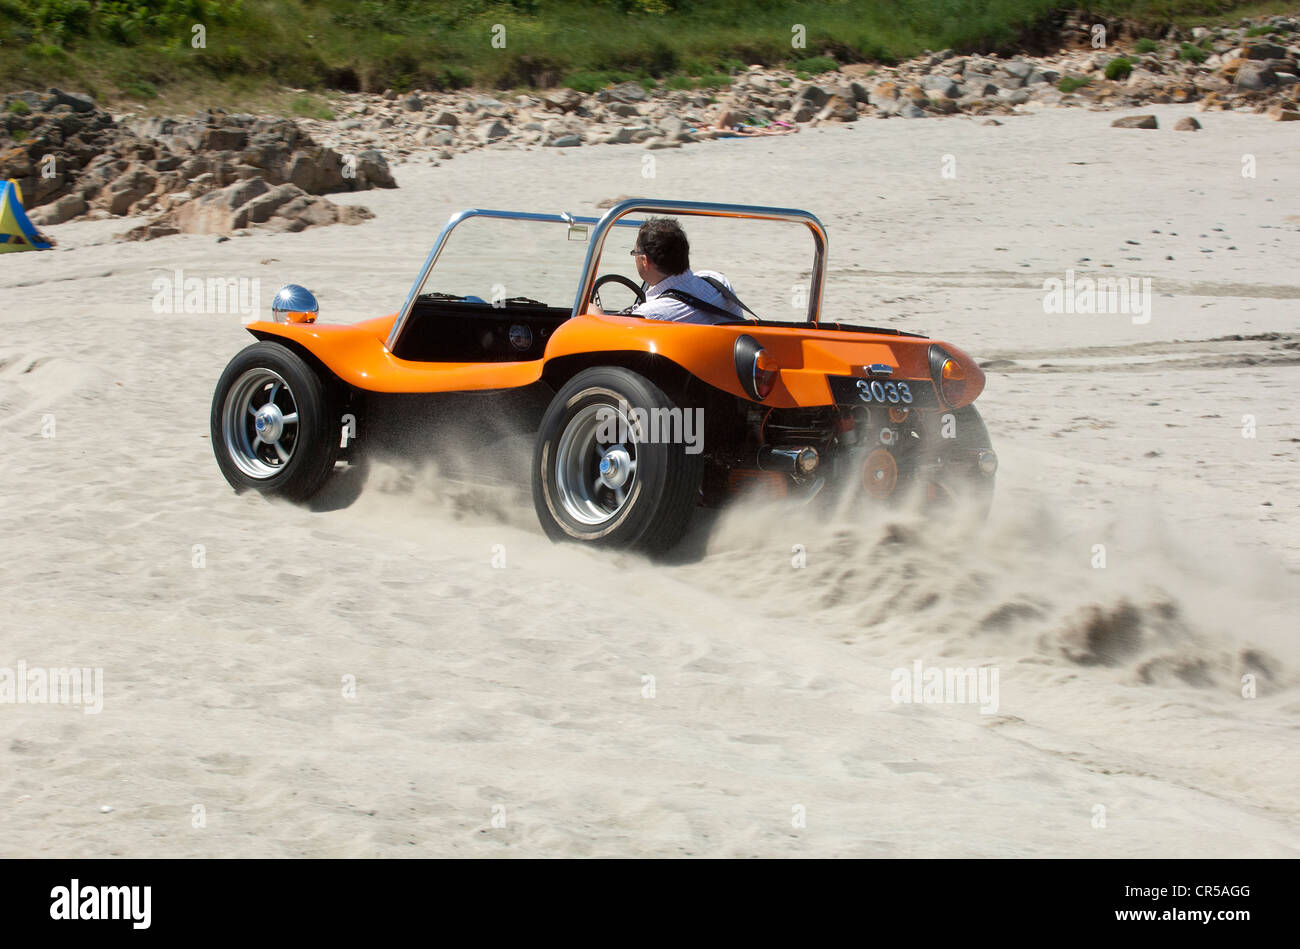 VW beach buggy driving on a sandy beach under a blue sky Stock Photo